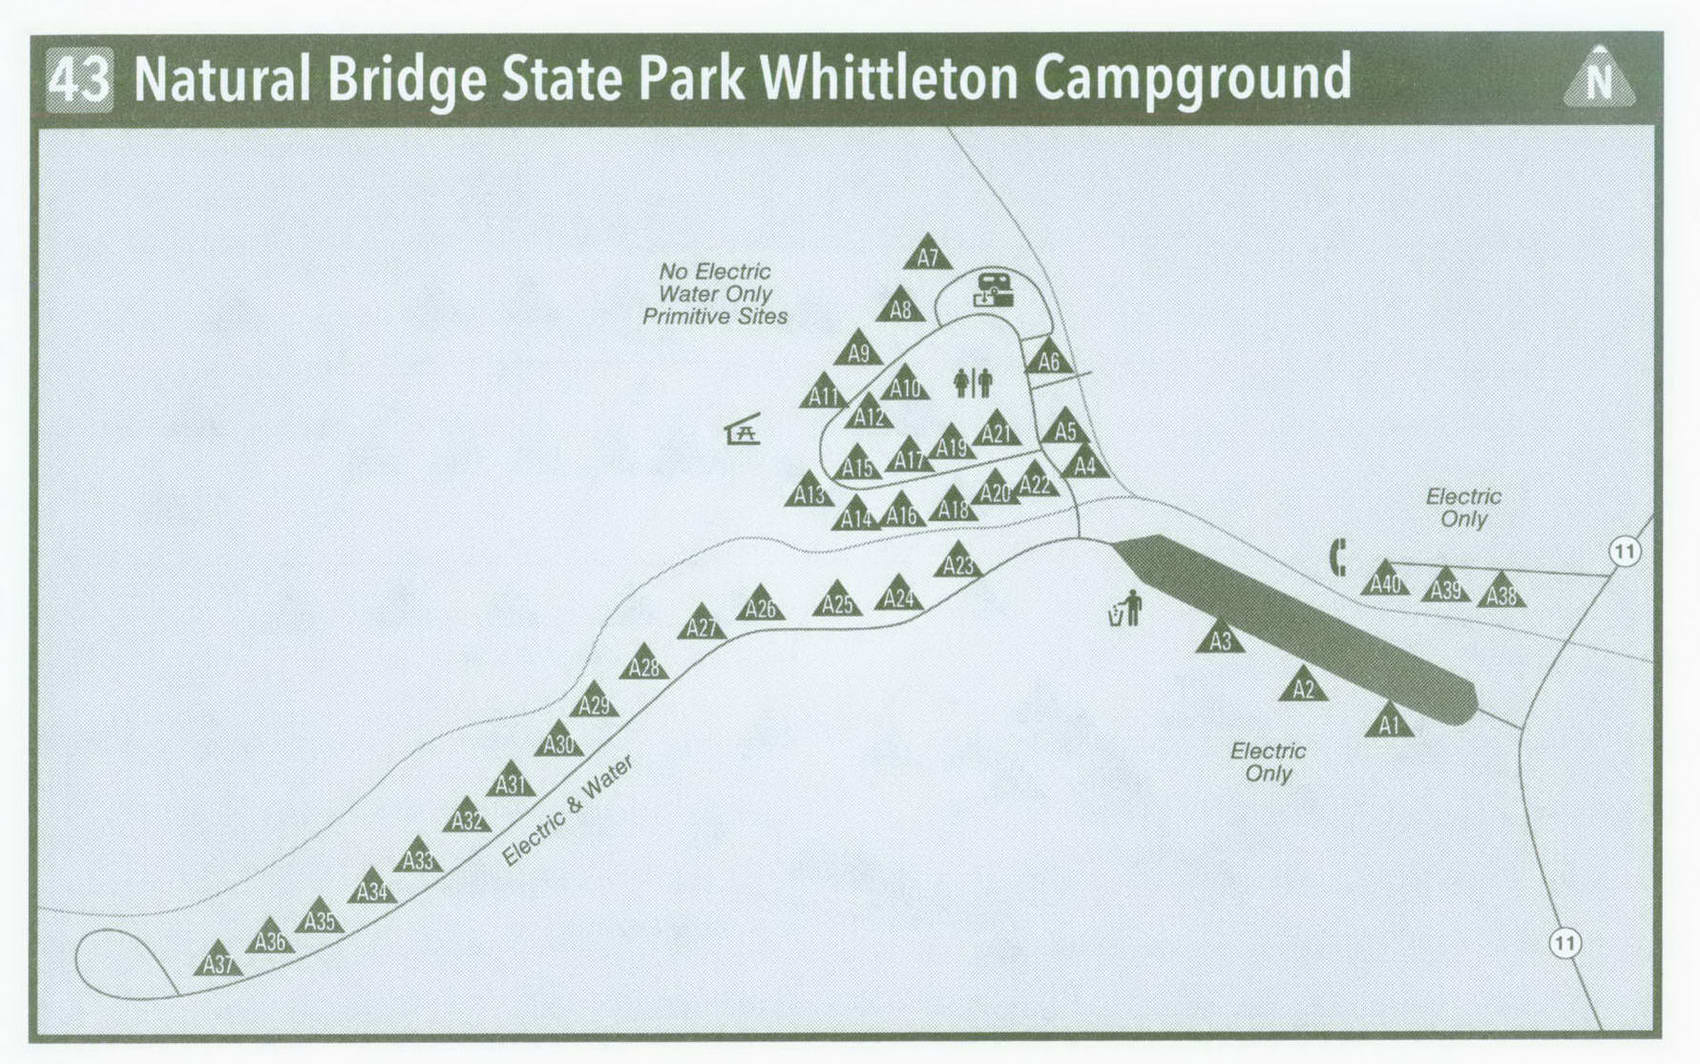 Plan of Natural Bridge State Park Whittleton Campground